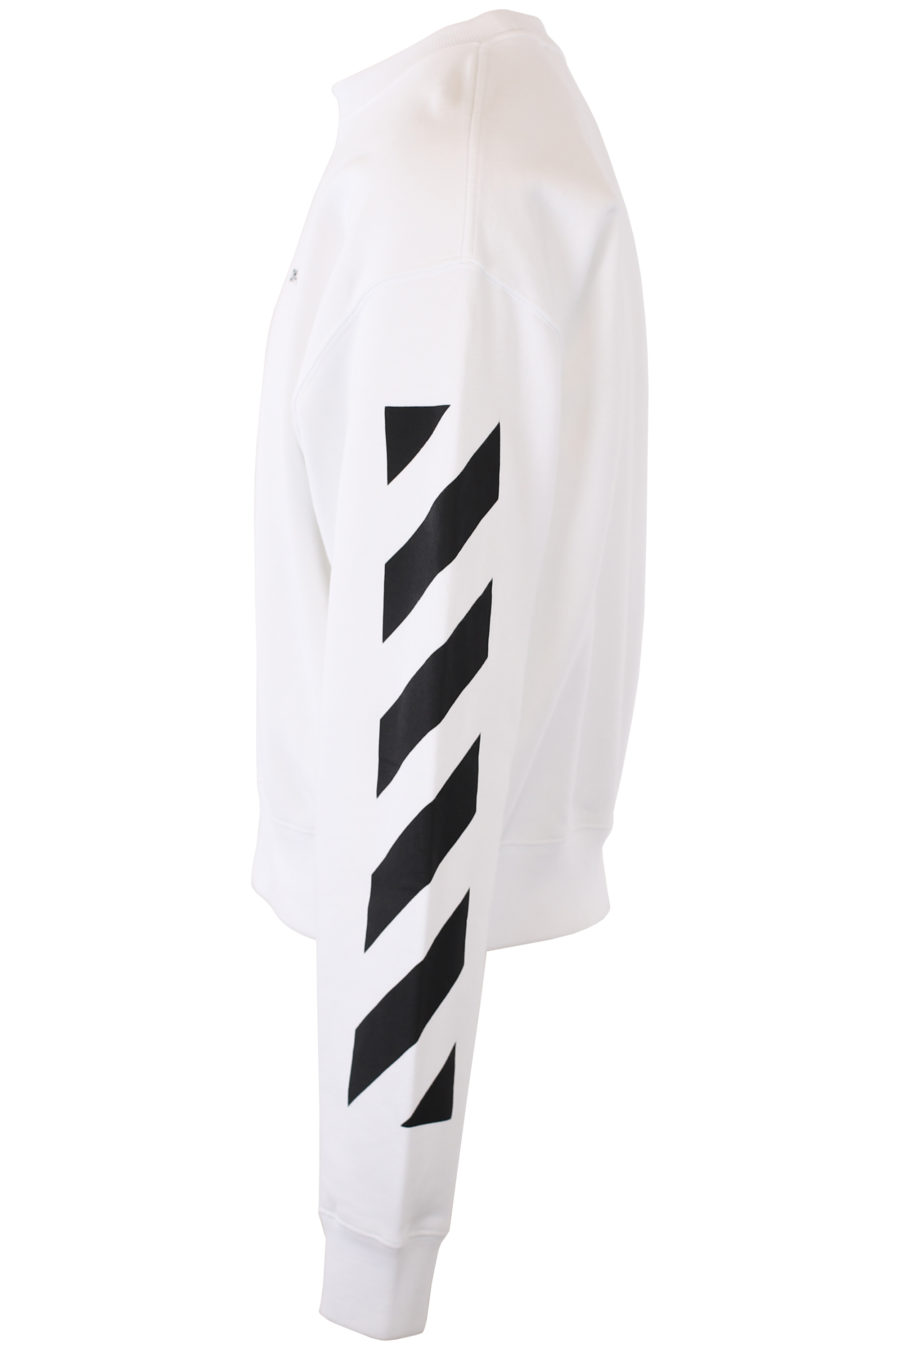 Weißes Sweatshirt mit Logo und Diagonalstreifen an den Ärmeln - IMG 2366